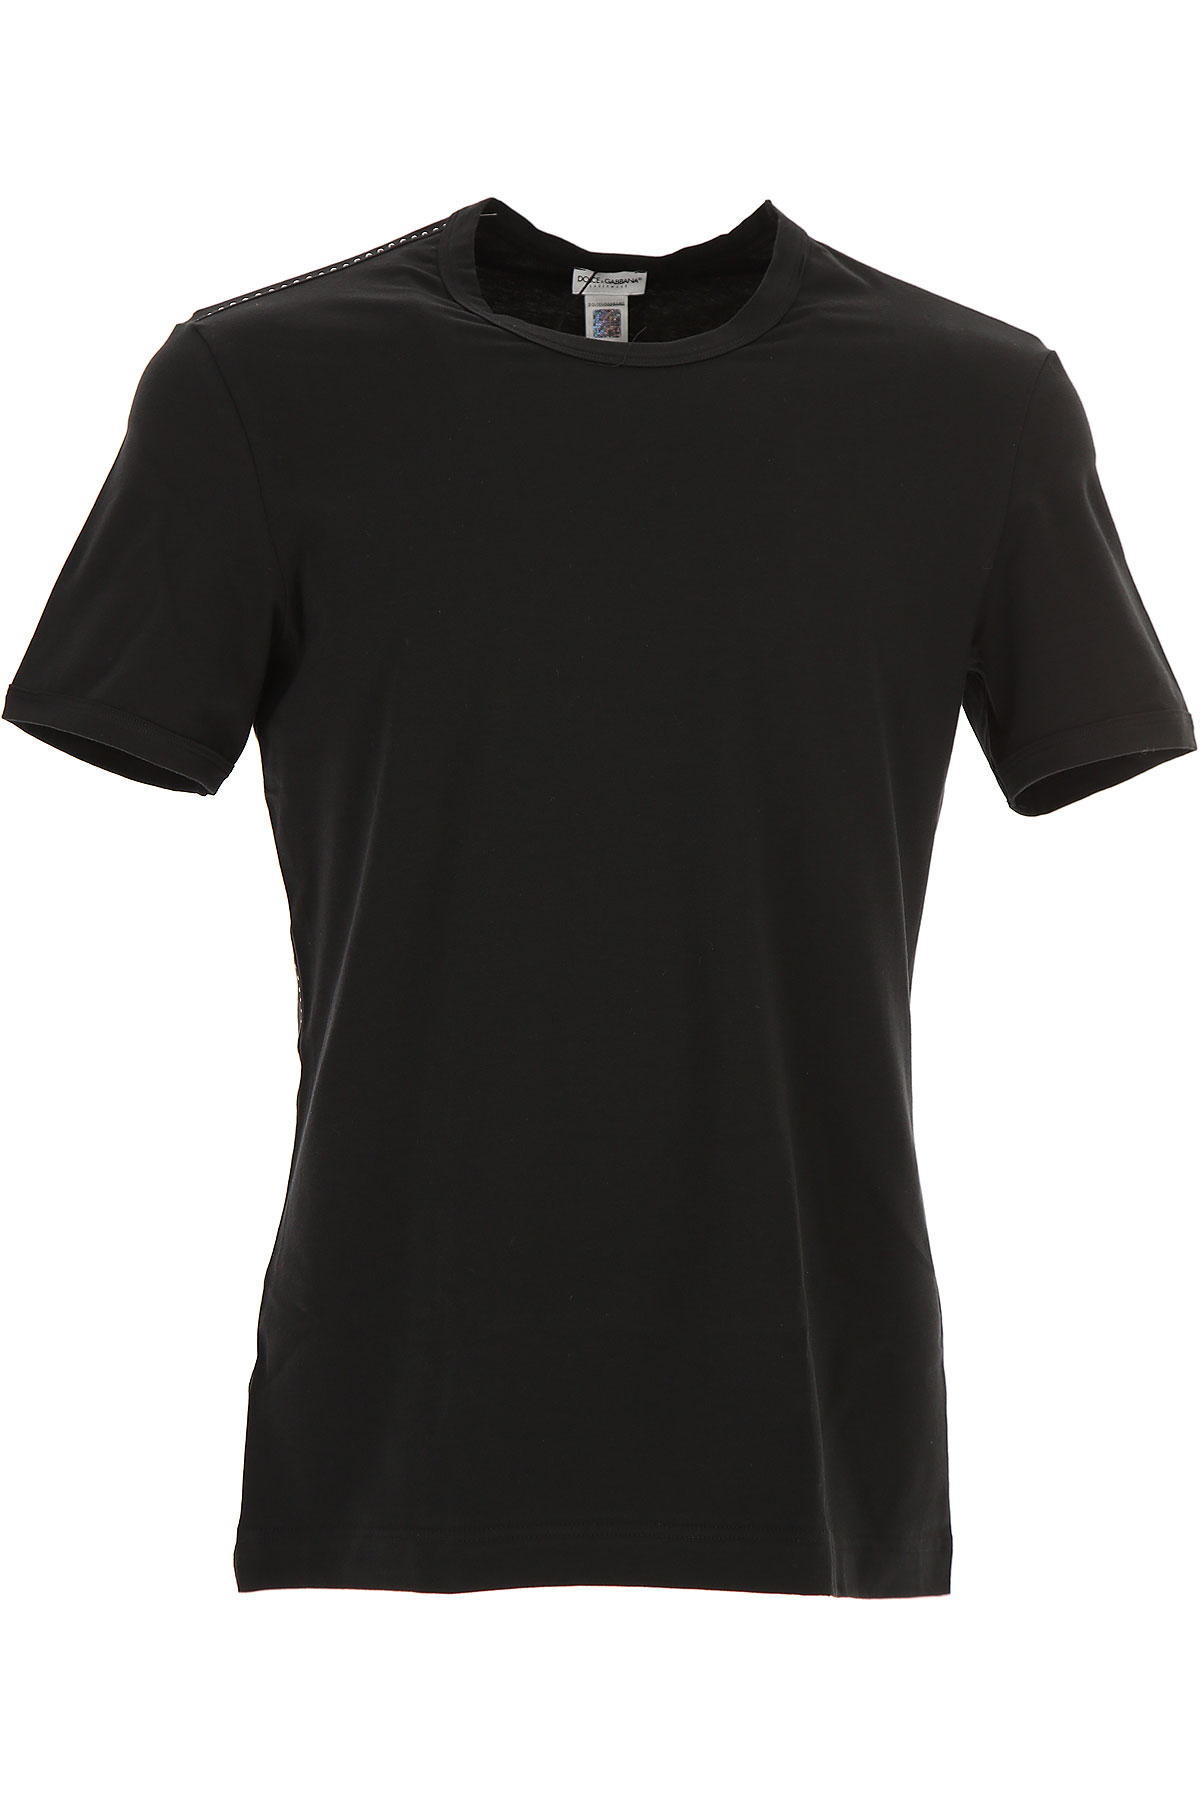 Dolce & Gabbana T-shirt Homme , Noir, Coton, 2017, L M S XL